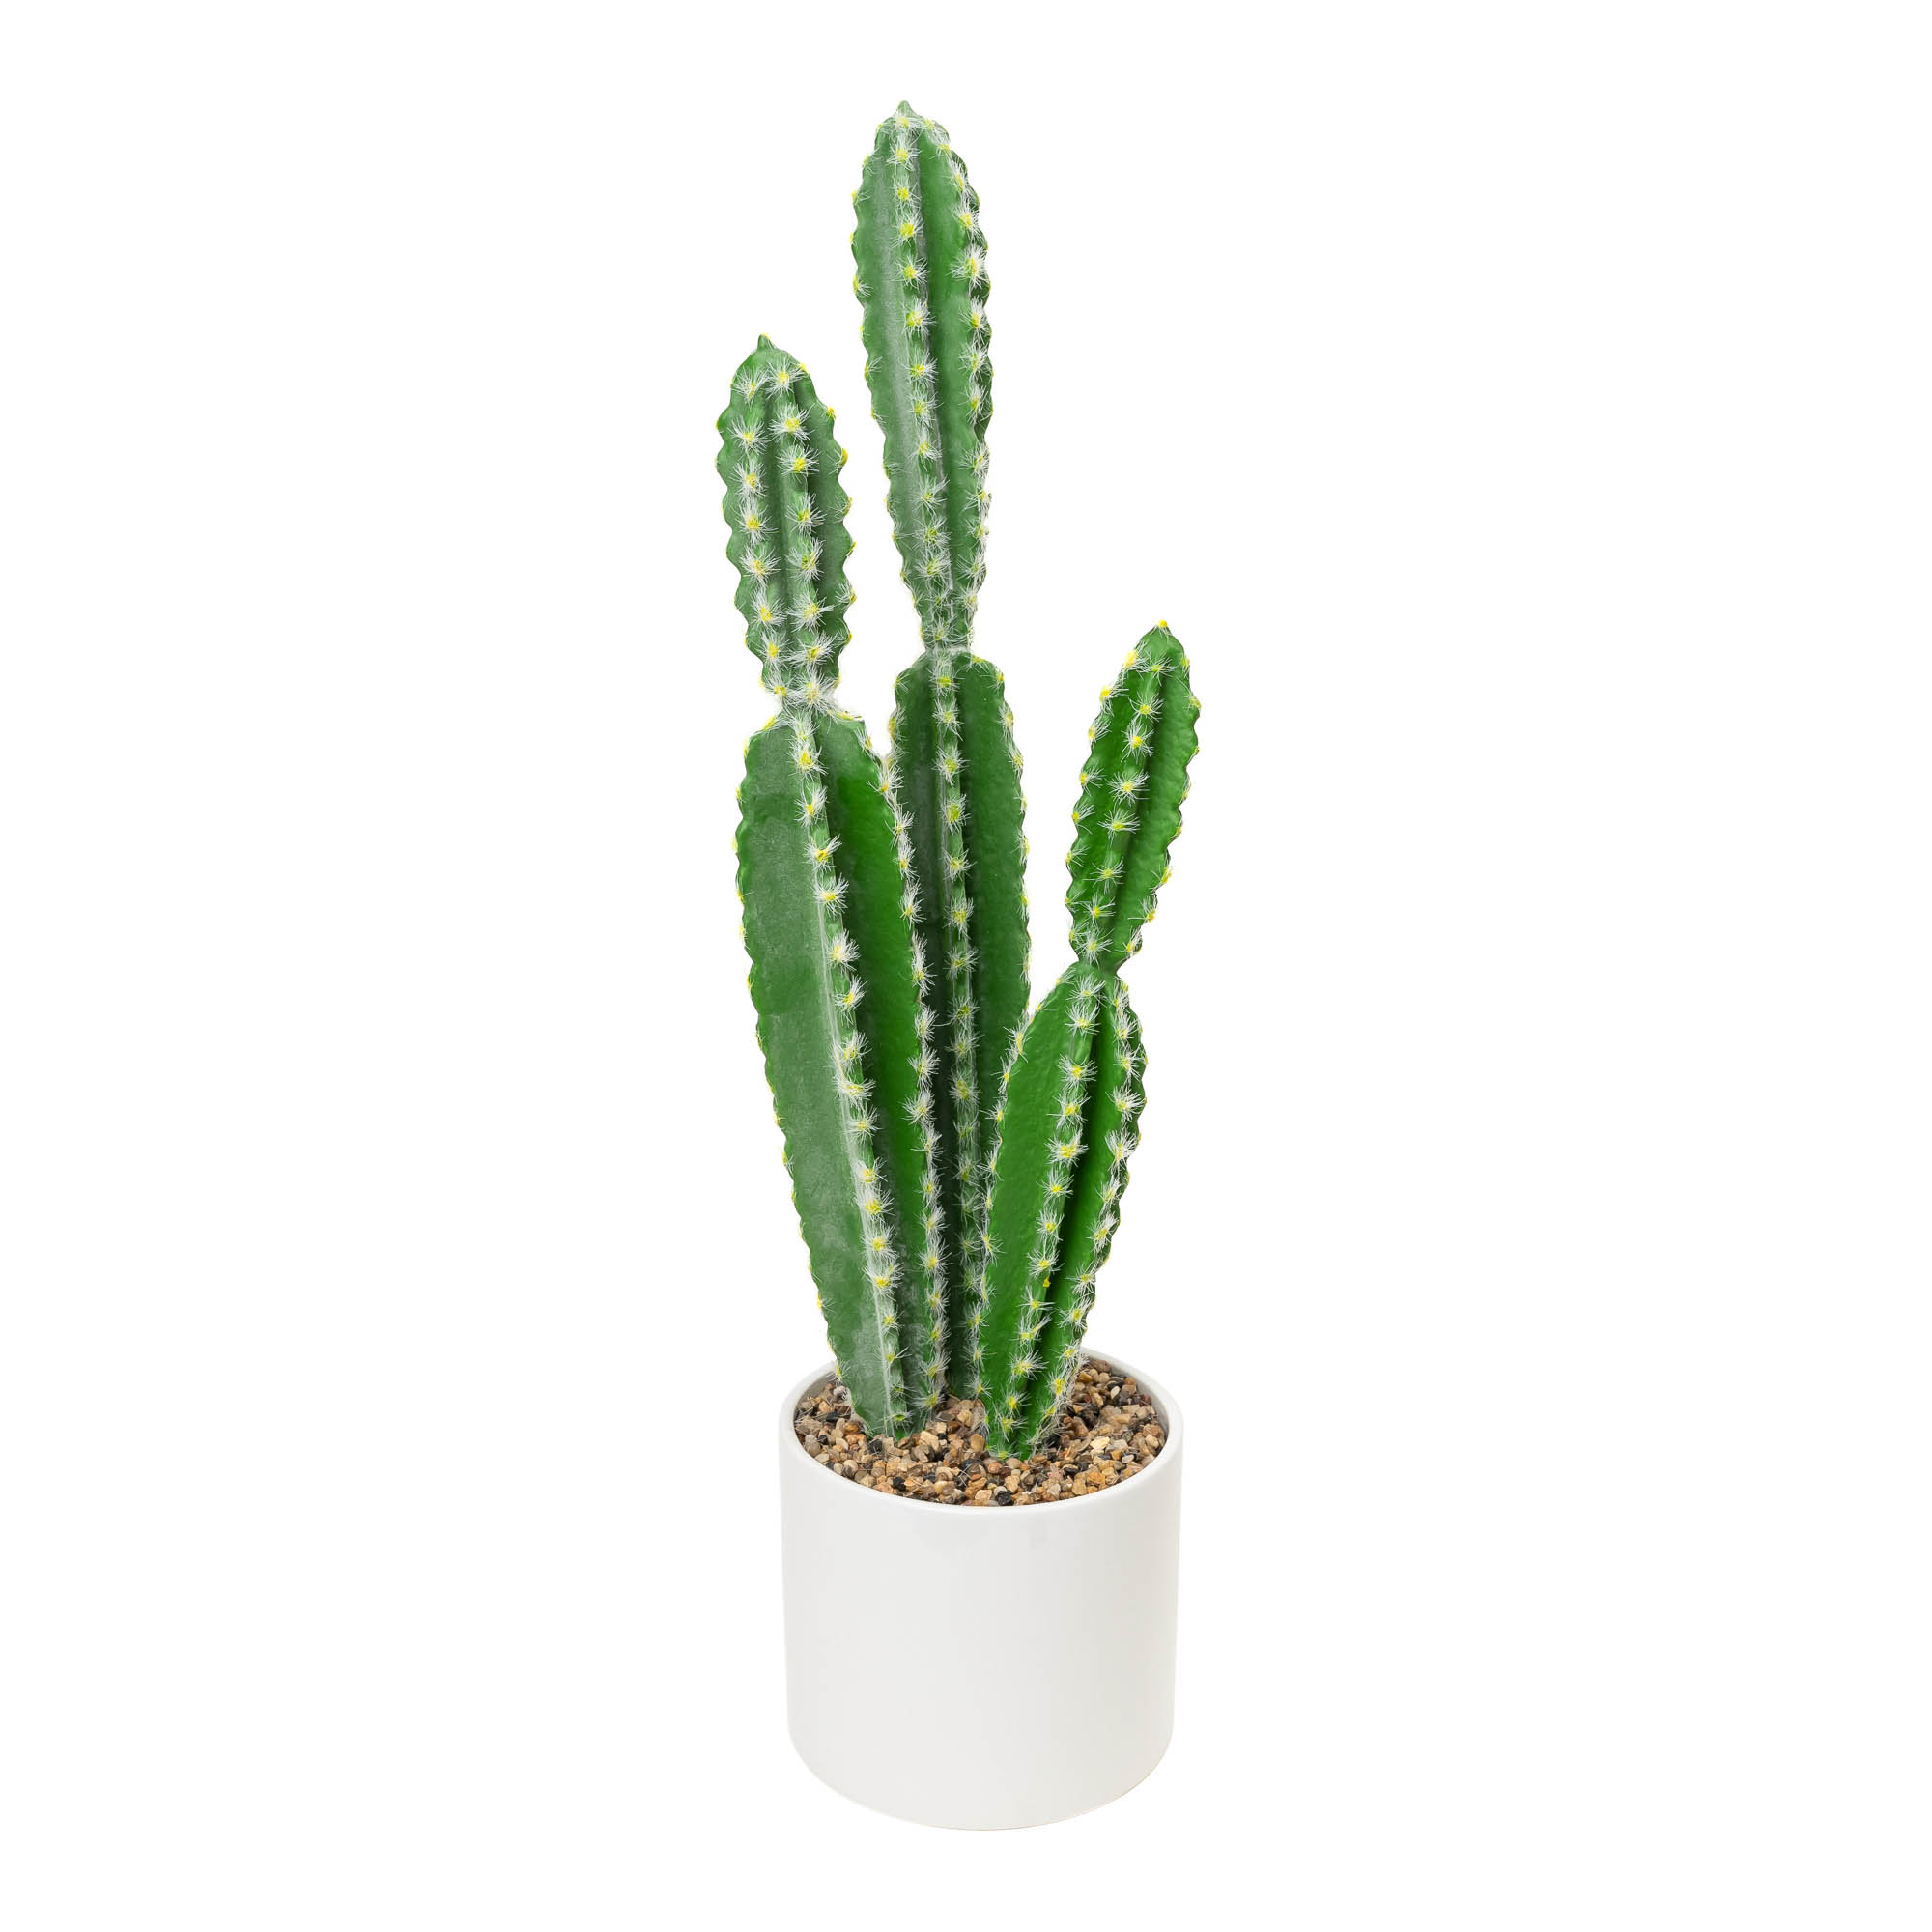 Faux Euphorbia Cactus with Ceramic Pot - 24“